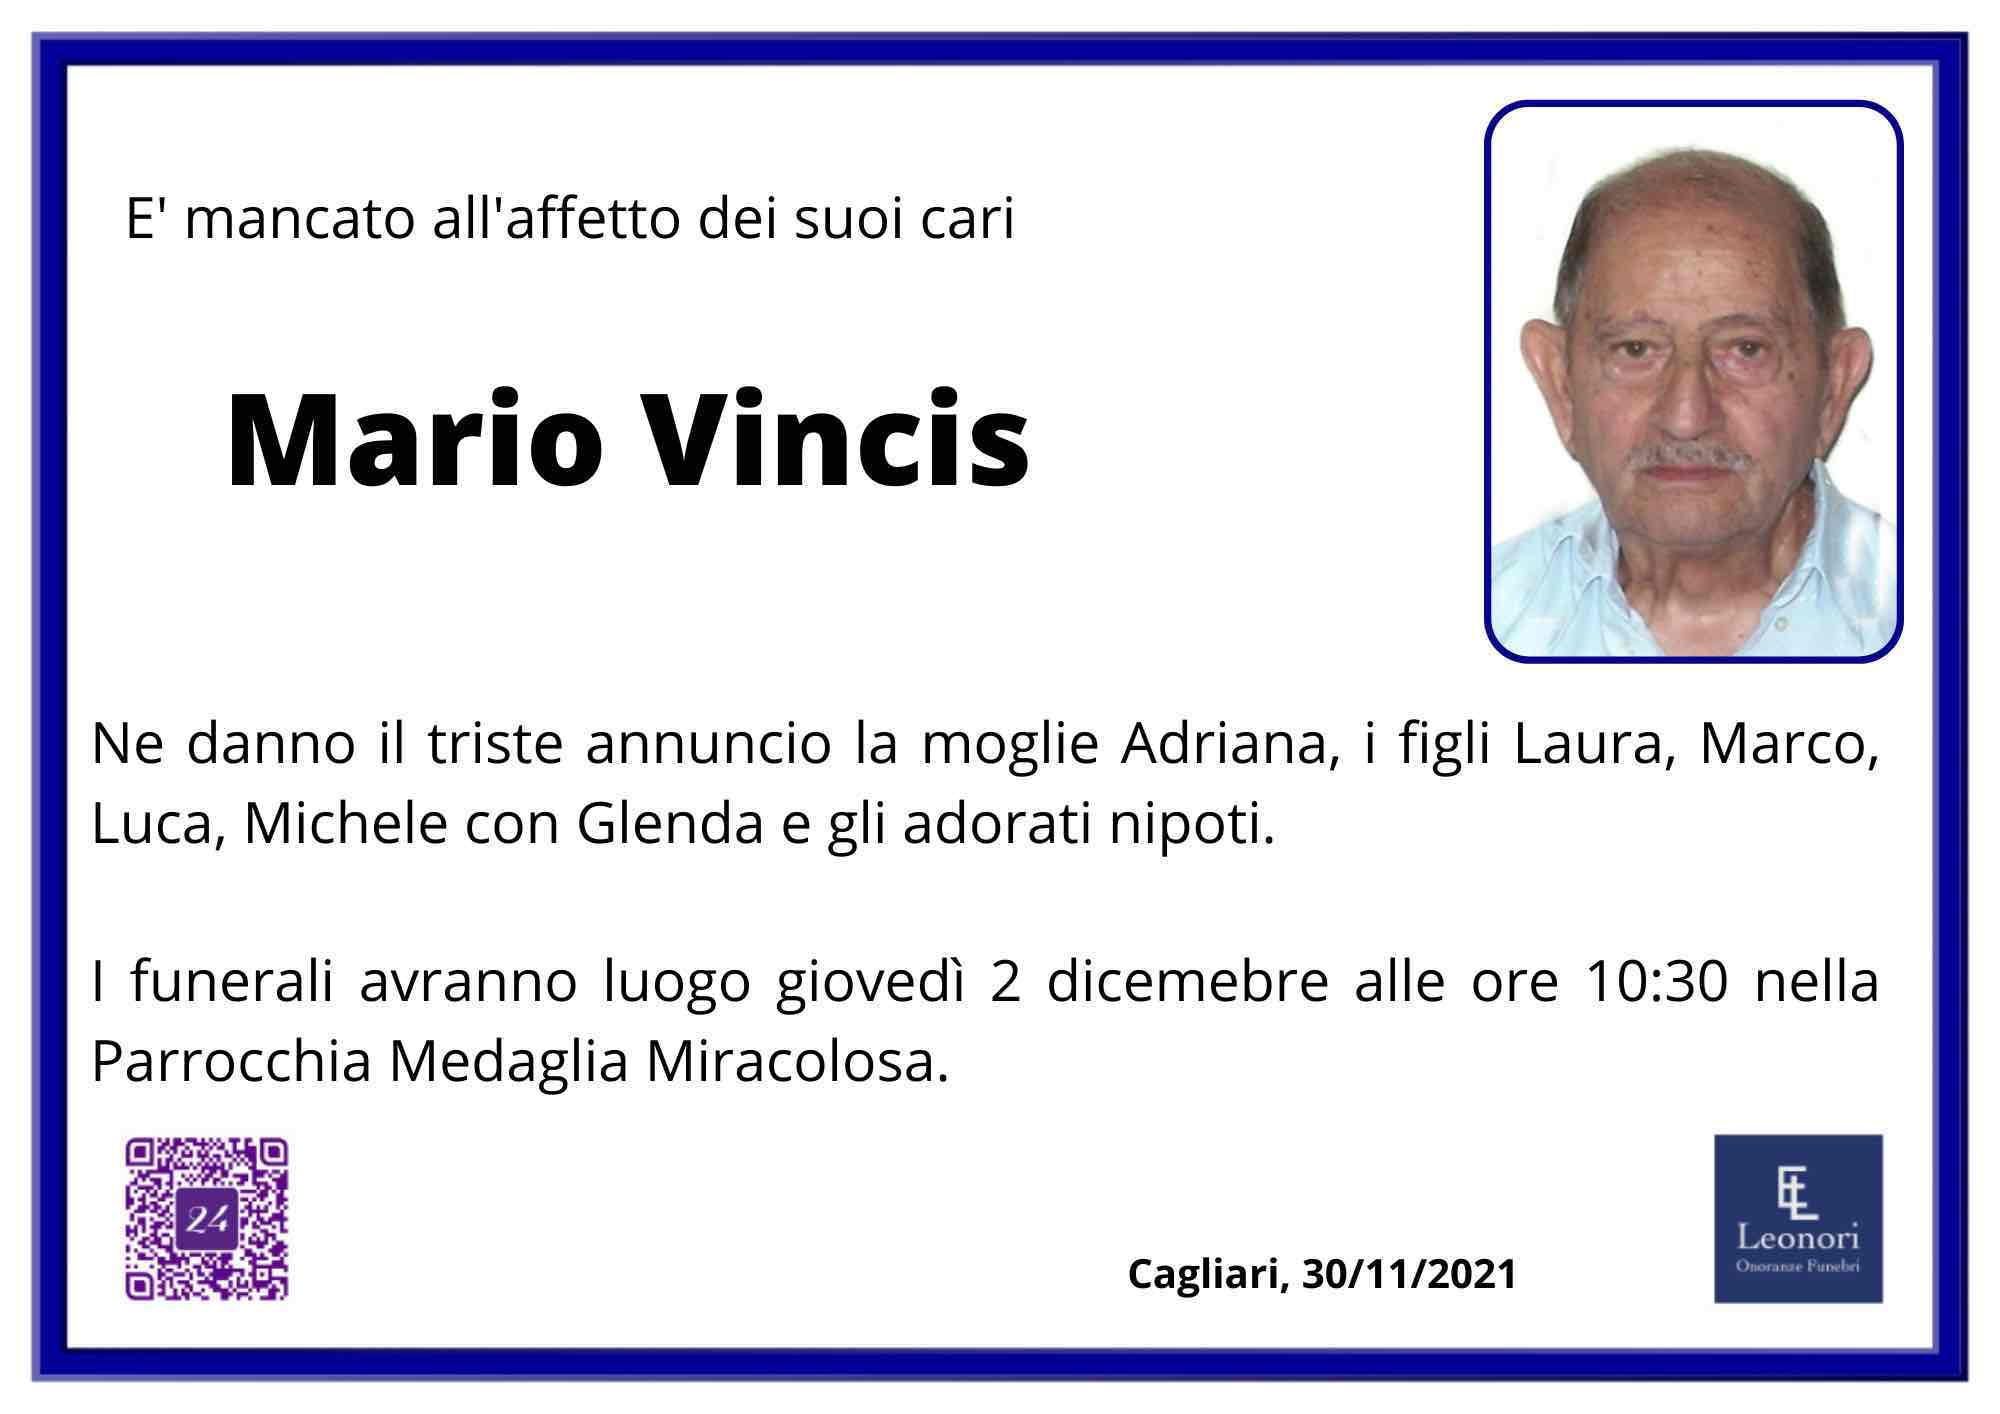 Mario Vincis